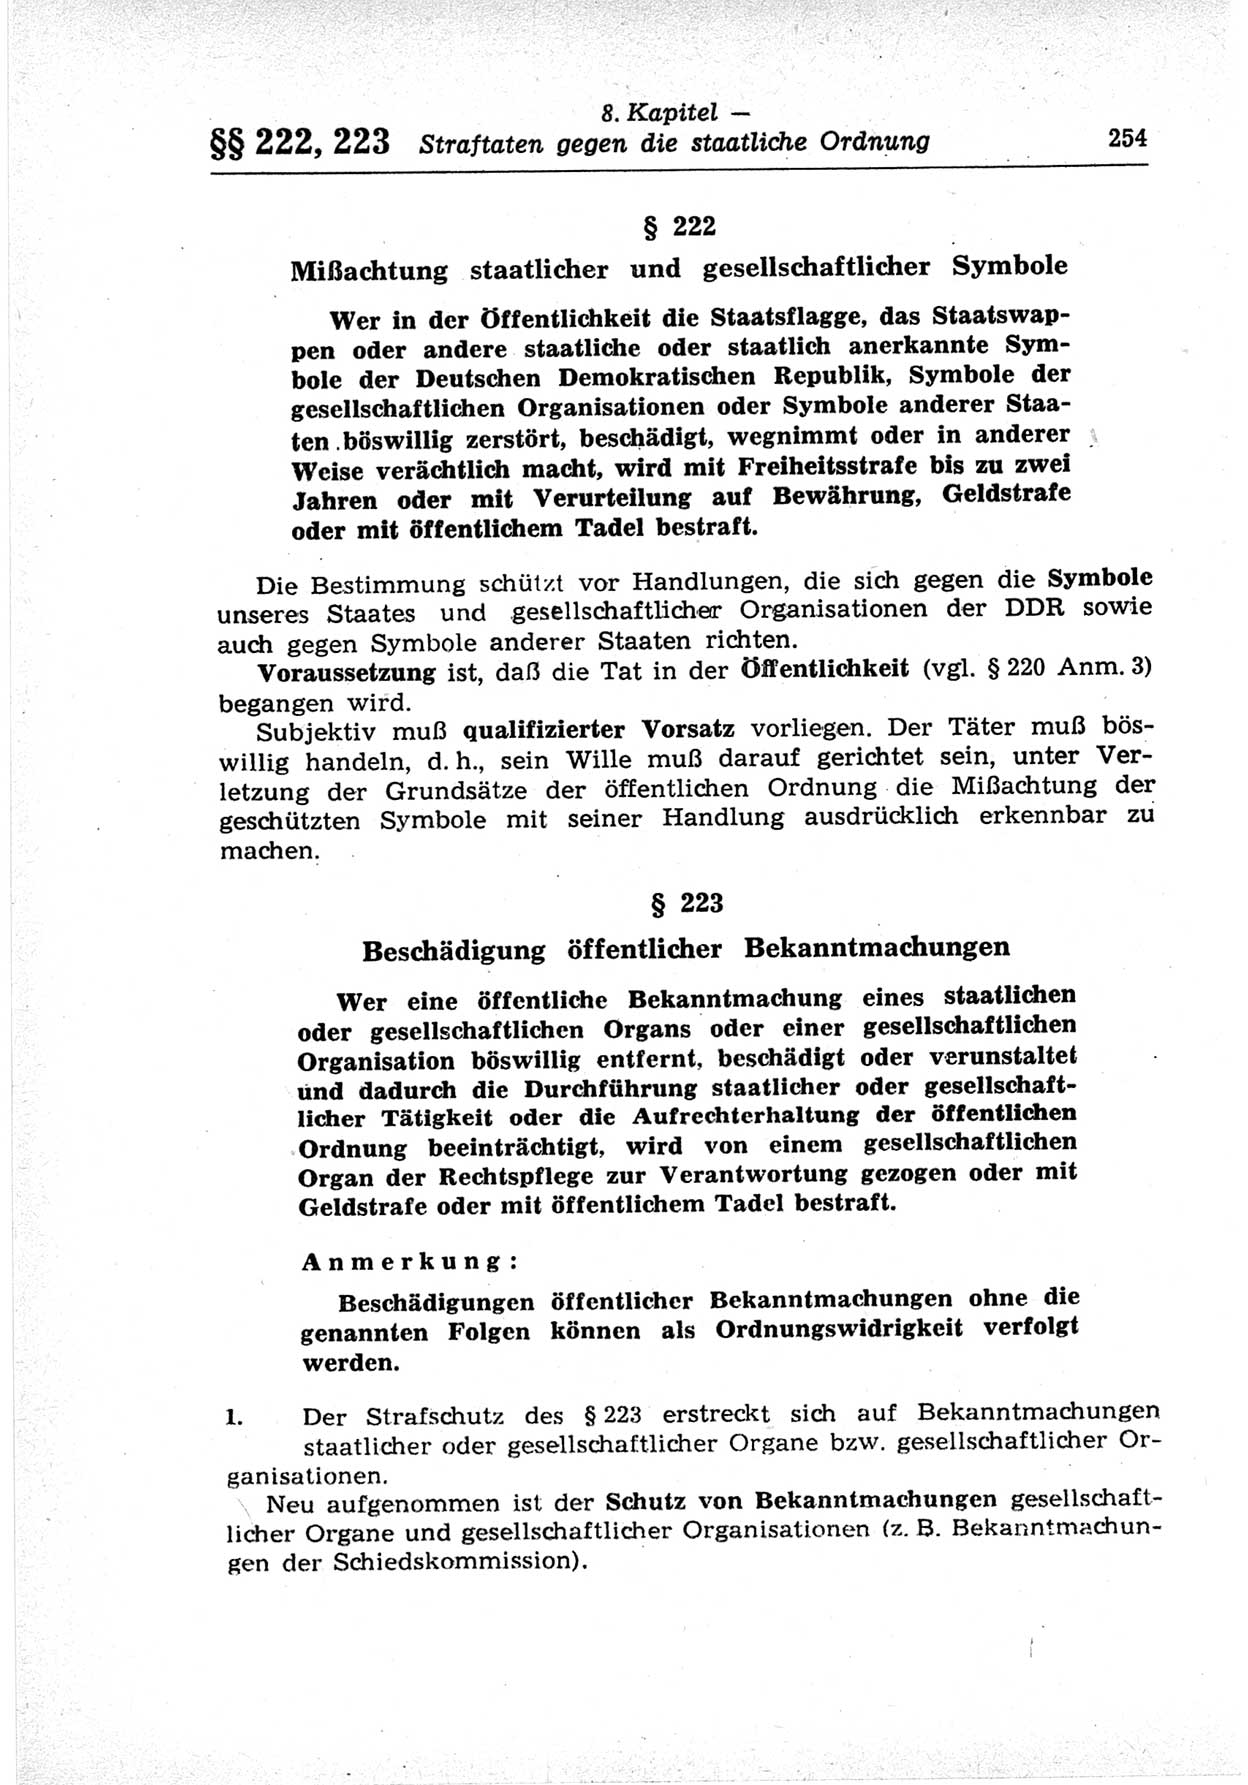 Strafrecht der Deutschen Demokratischen Republik (DDR), Lehrkommentar zum Strafgesetzbuch (StGB), Besonderer Teil 1969, Seite 254 (Strafr. DDR Lehrkomm. StGB BT 1969, S. 254)